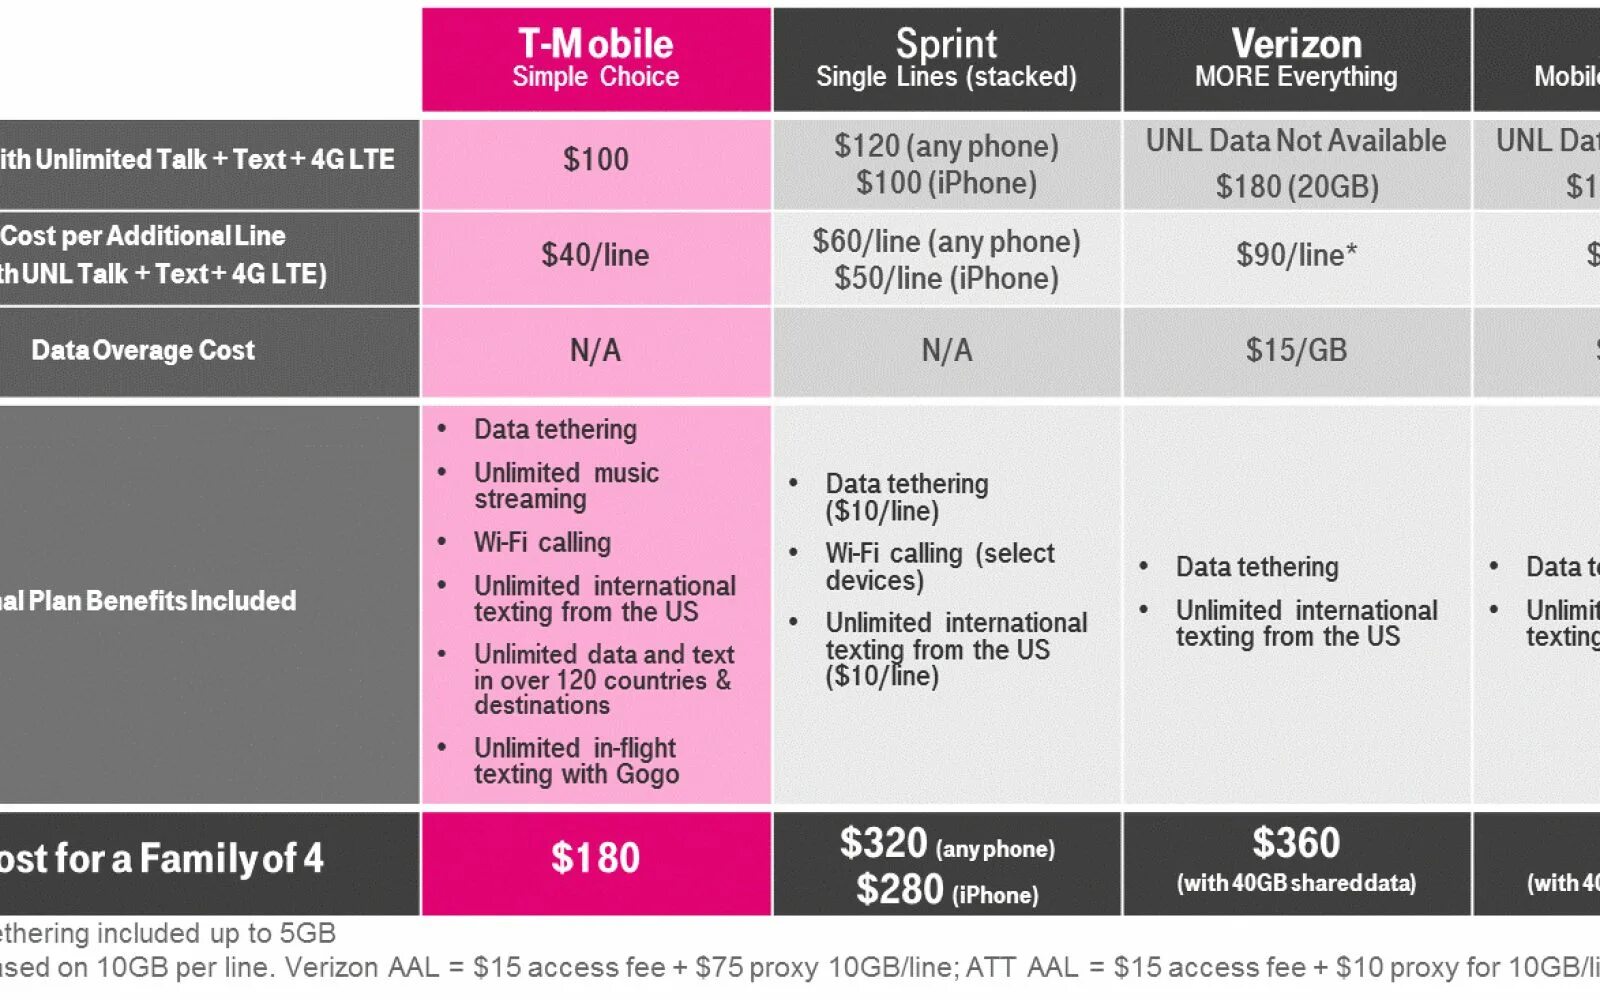 T mobile Verizon. T mobile Sprint. T mobile Sprint графики. T mobile MK Tarifi. Mobile plan